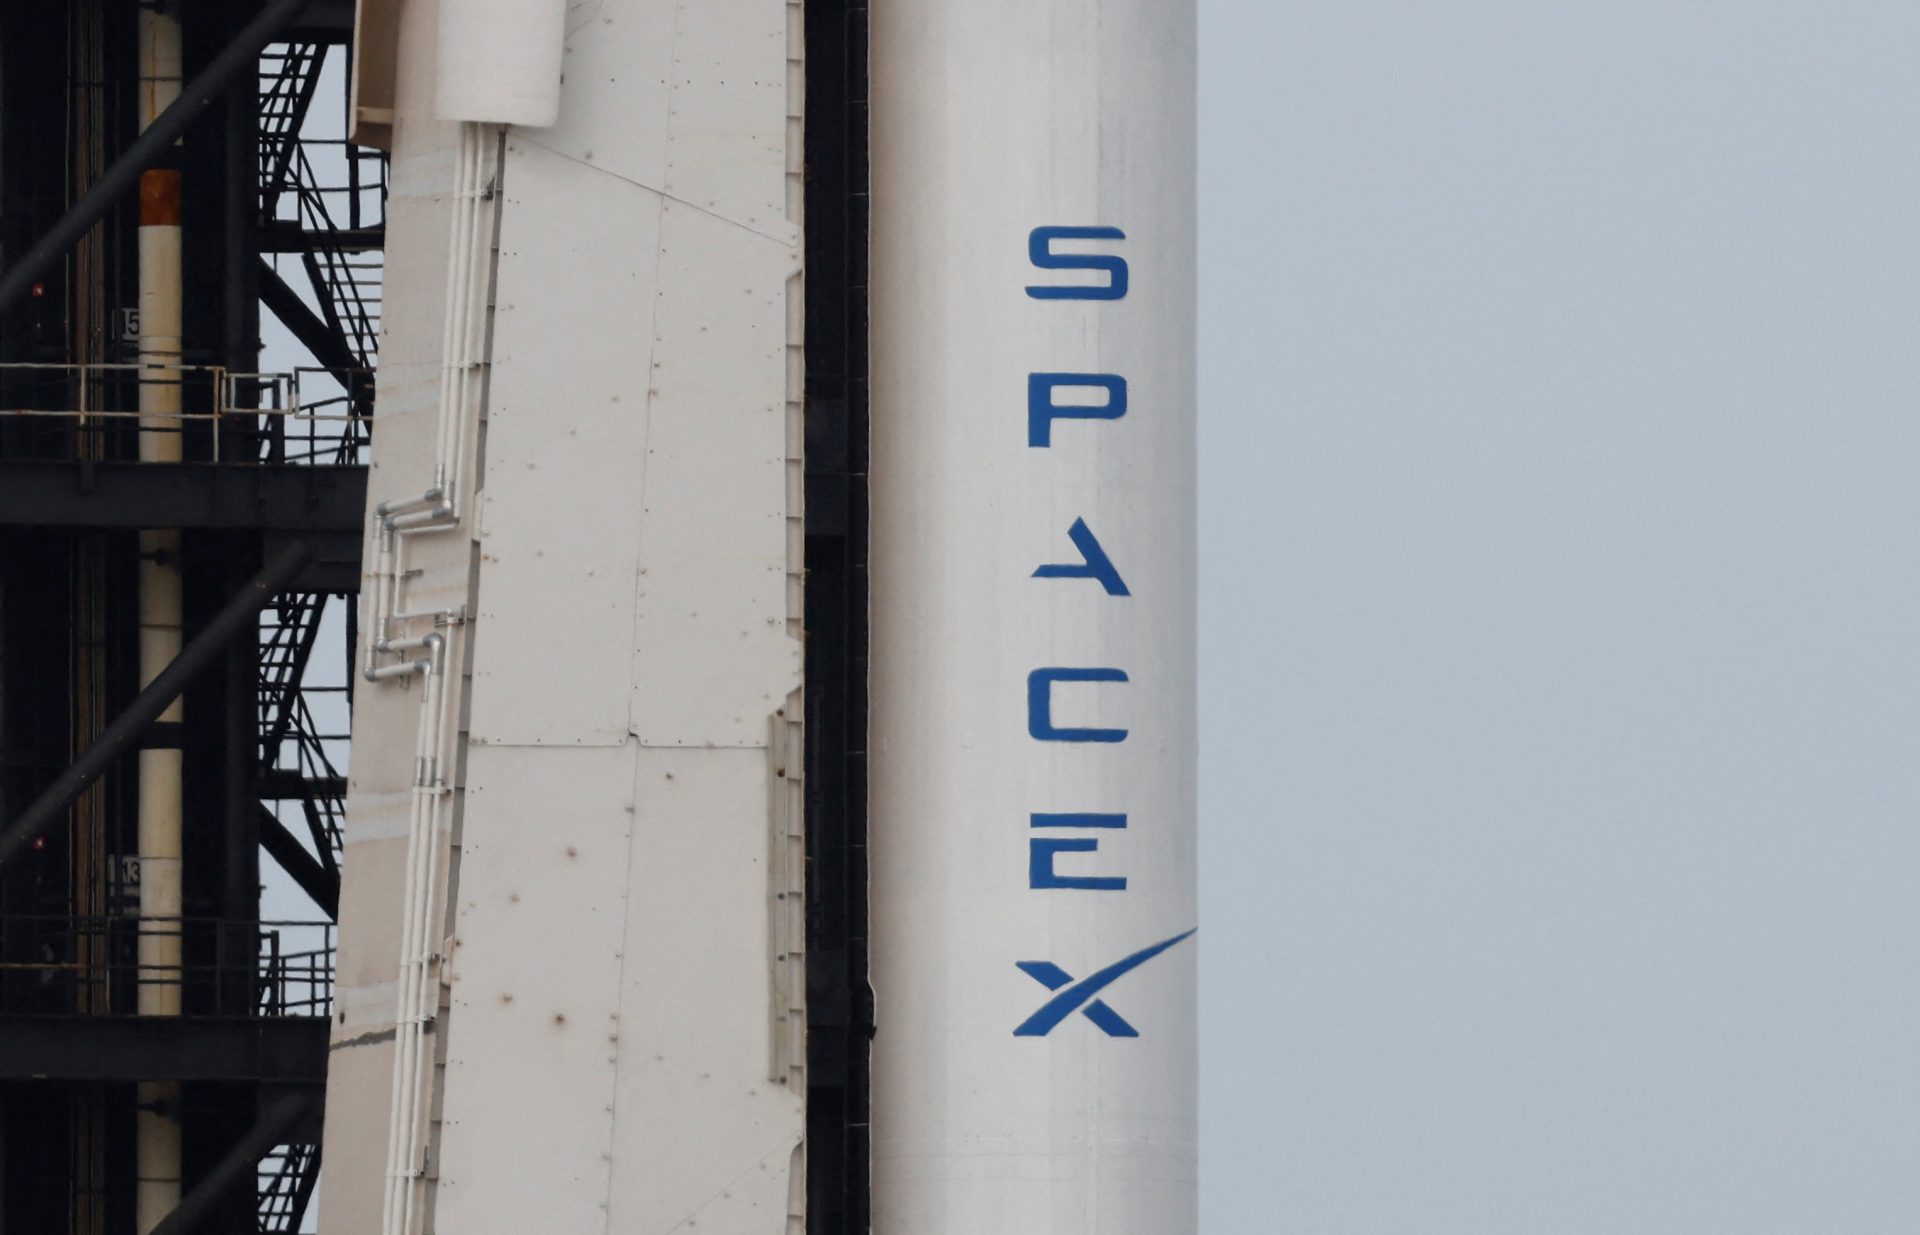 Des ex-employés de SpaceX portent plainte pour harcèlement et licenciement abusif